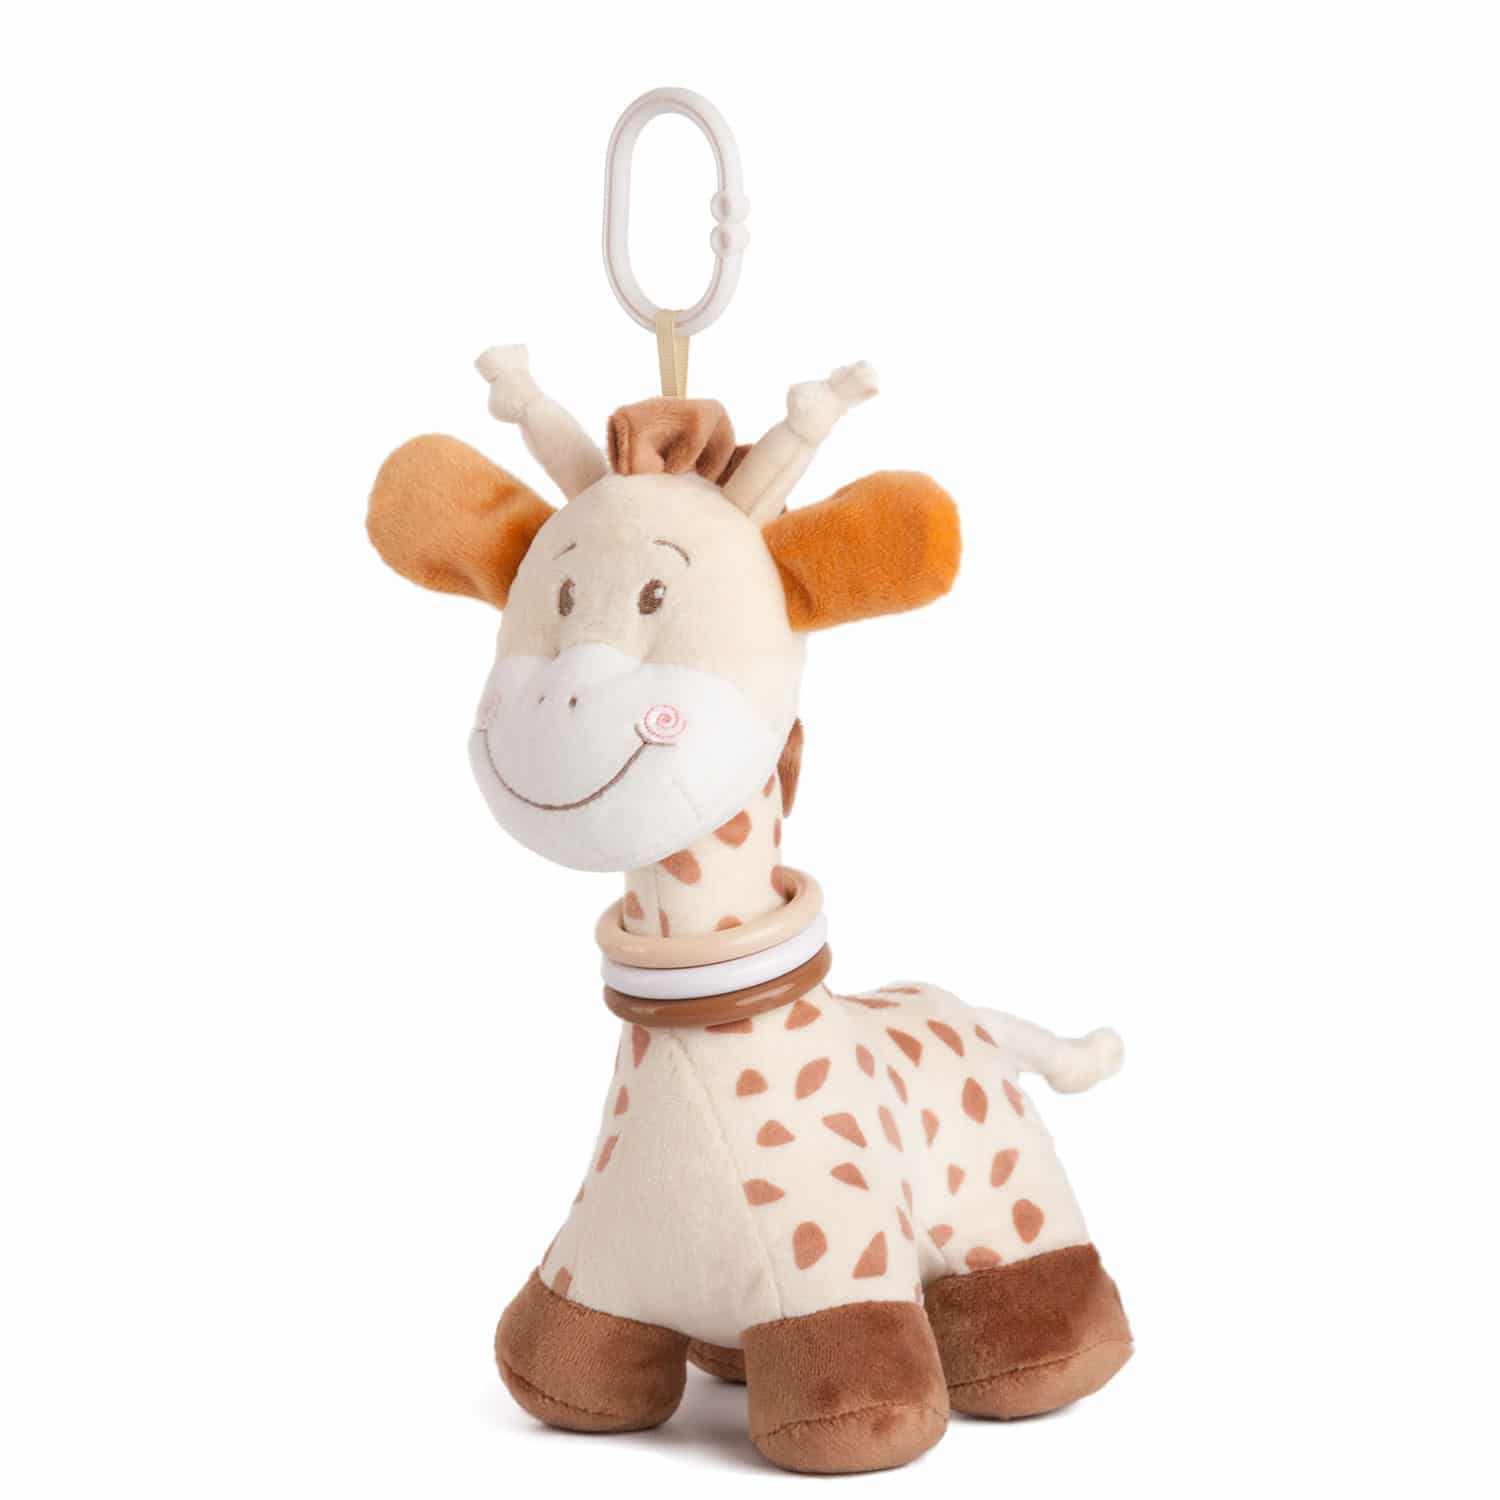 Baby toy giraffe Heck Sr.